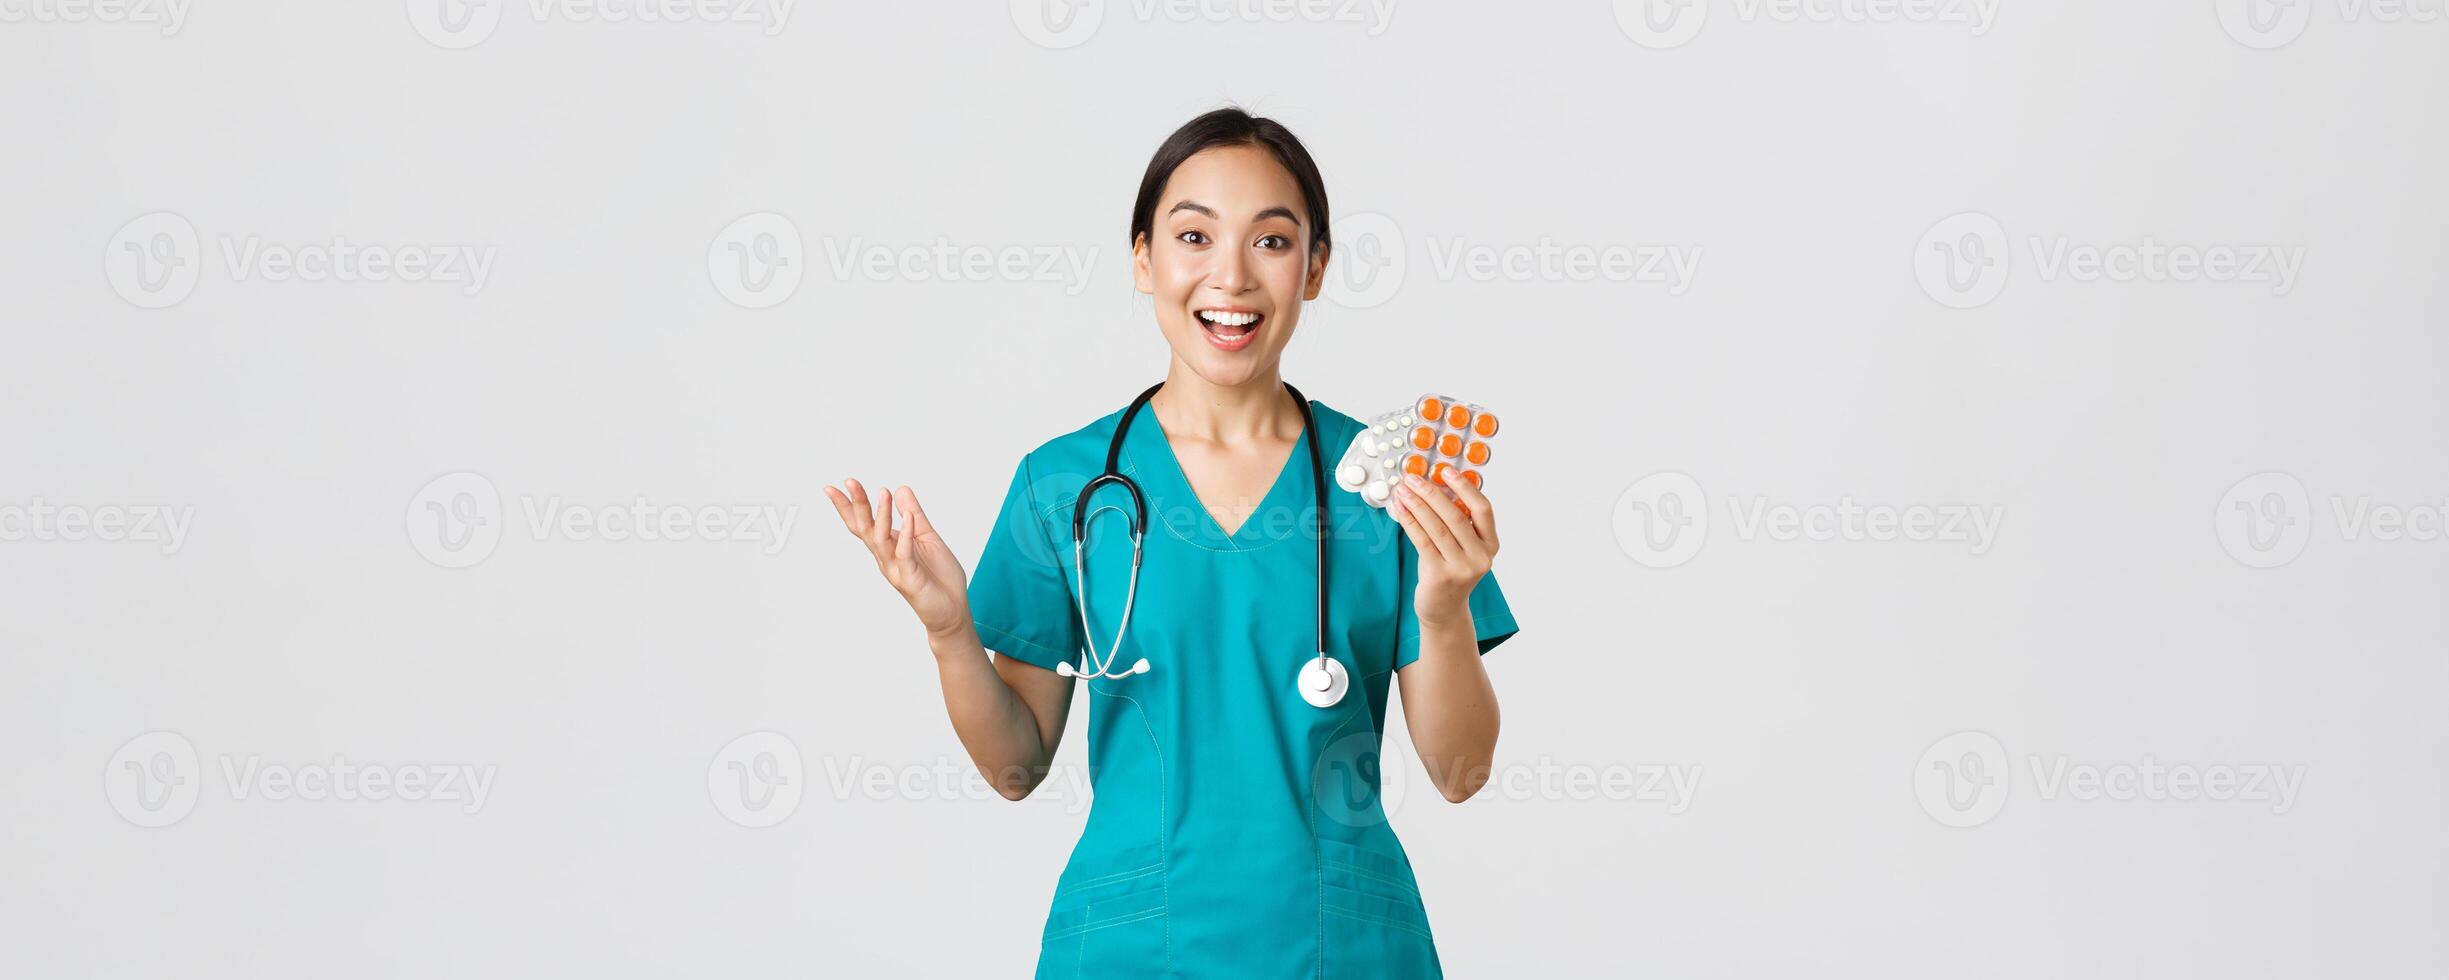 gezondheidszorg arbeiders, voorkomen virus, quarantaine campagne concept. opgewonden gelukkig Aziatisch vrouw arts, verpleegster in medisch masker tonen verbazingwekkend nieuw medicatie, adviseren apotheek foto